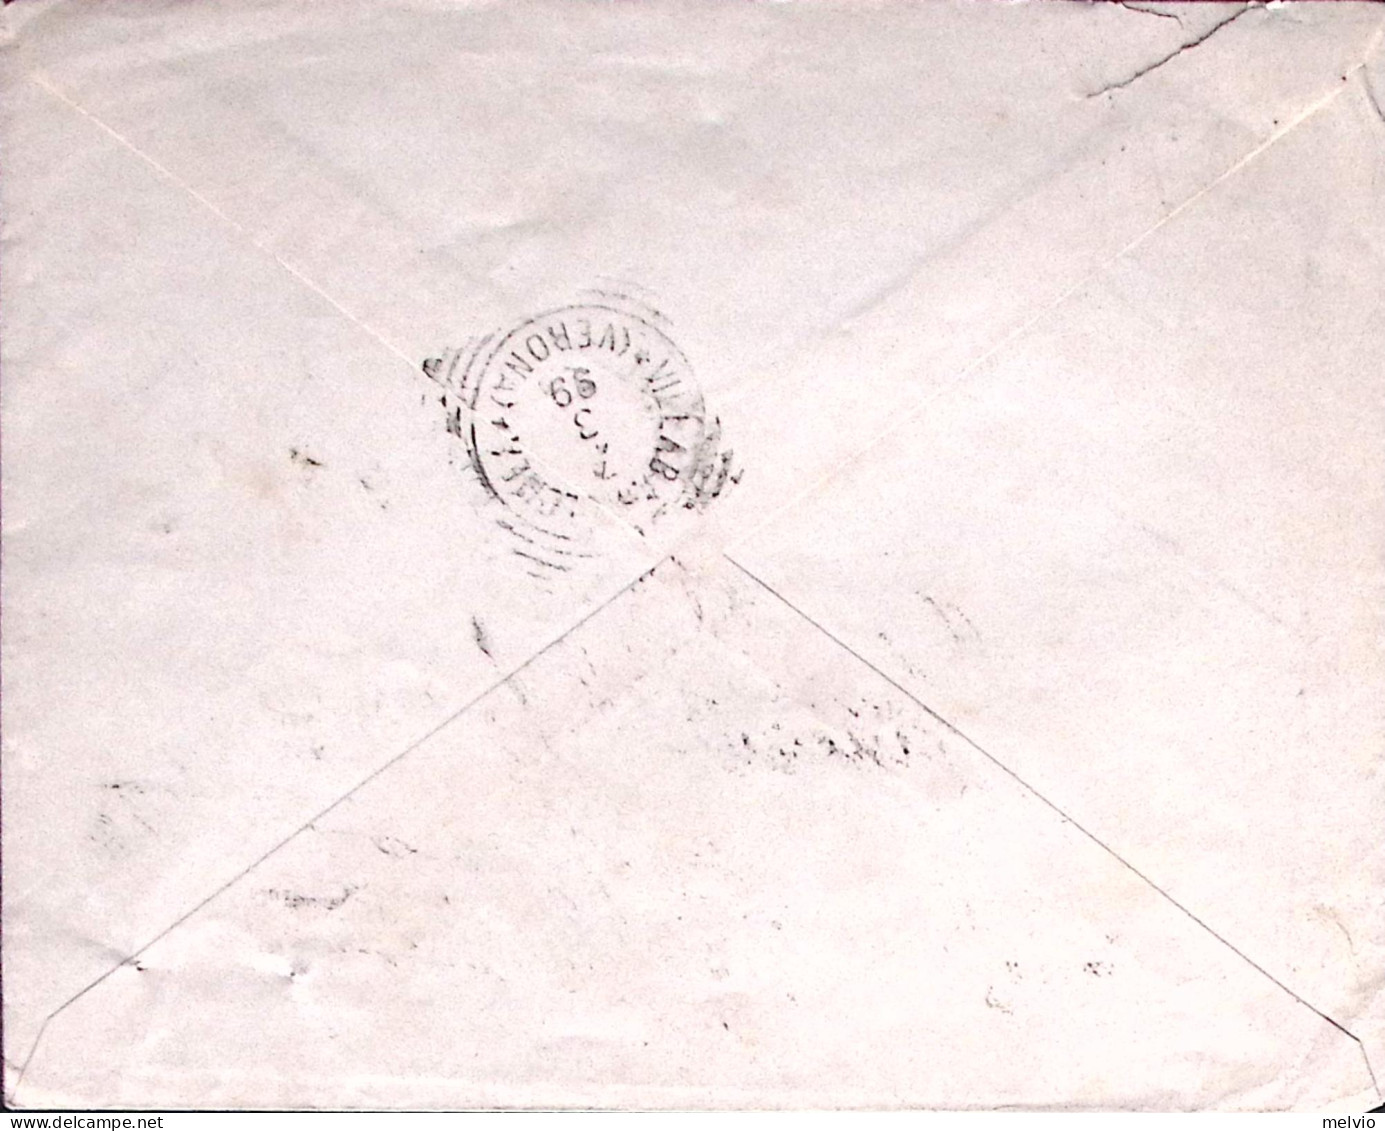 1899-SUZZARA Casali F.-Figli Intestazione A Stampa Di Busta (6.3) - Marcophilia